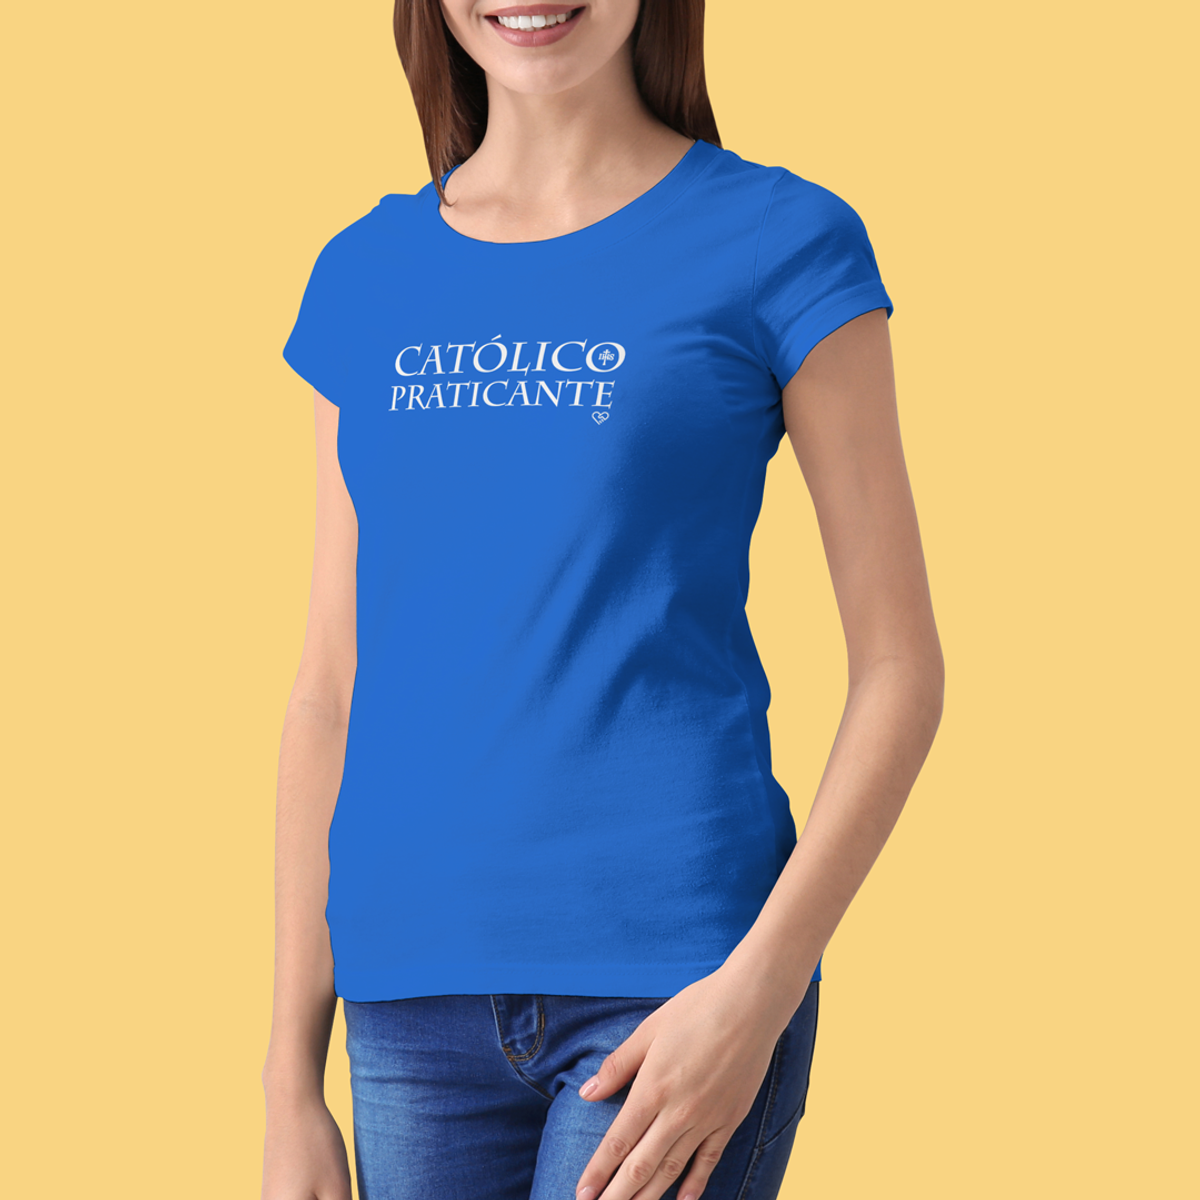 Nome do produto: Camiseta Católico Praticanete - Feminina